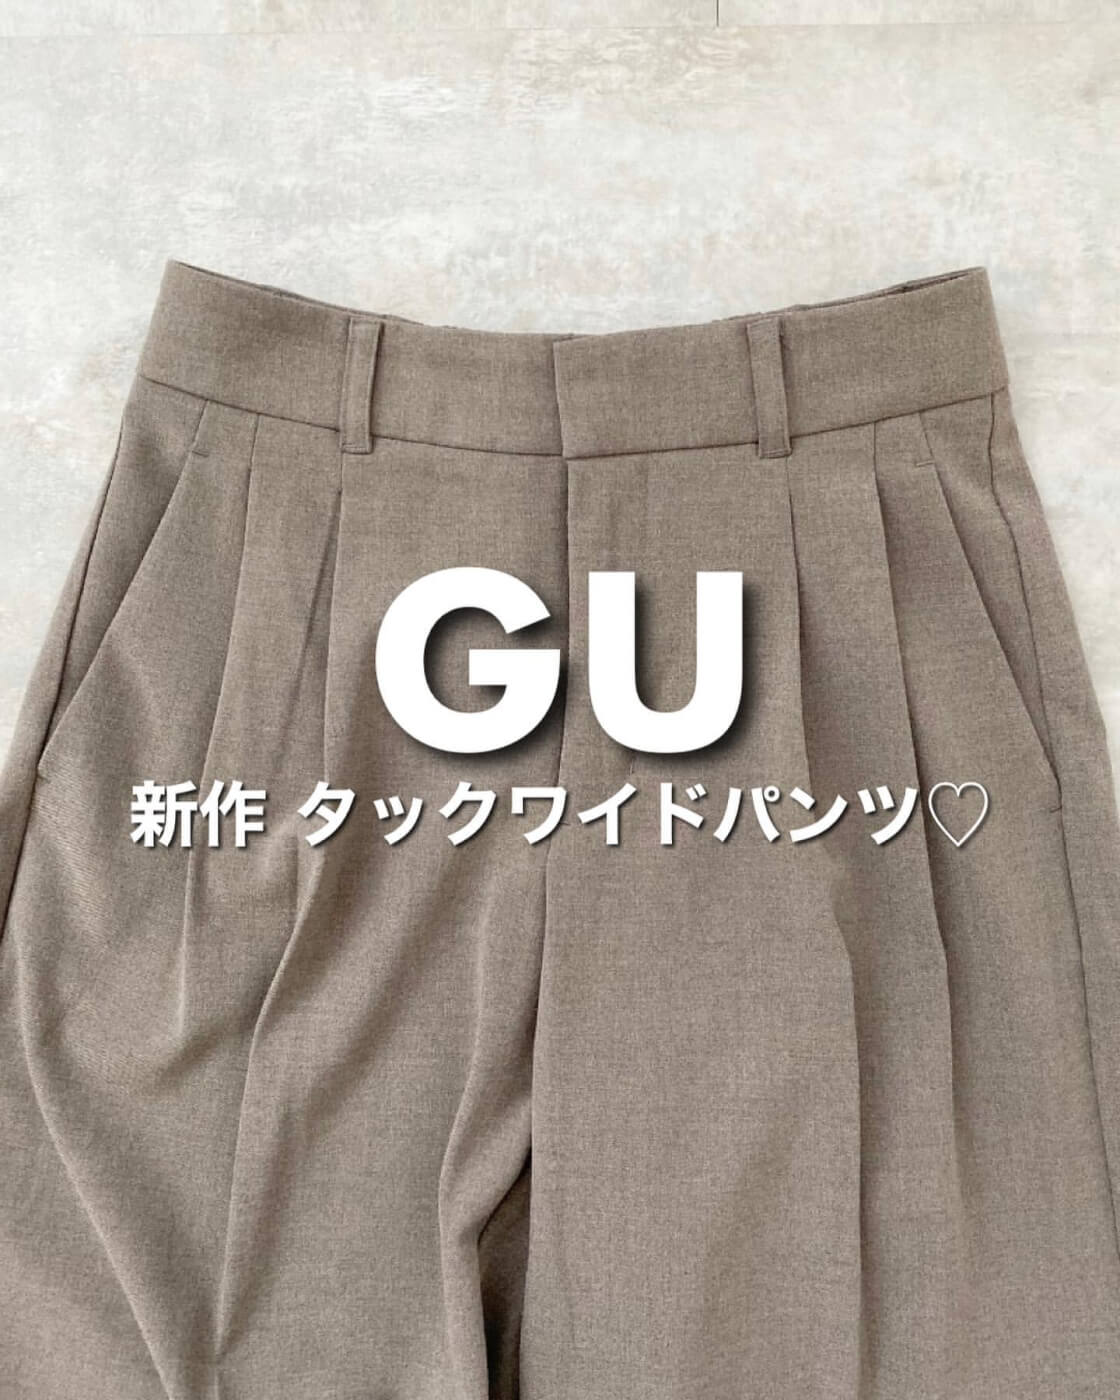 gu wide pants